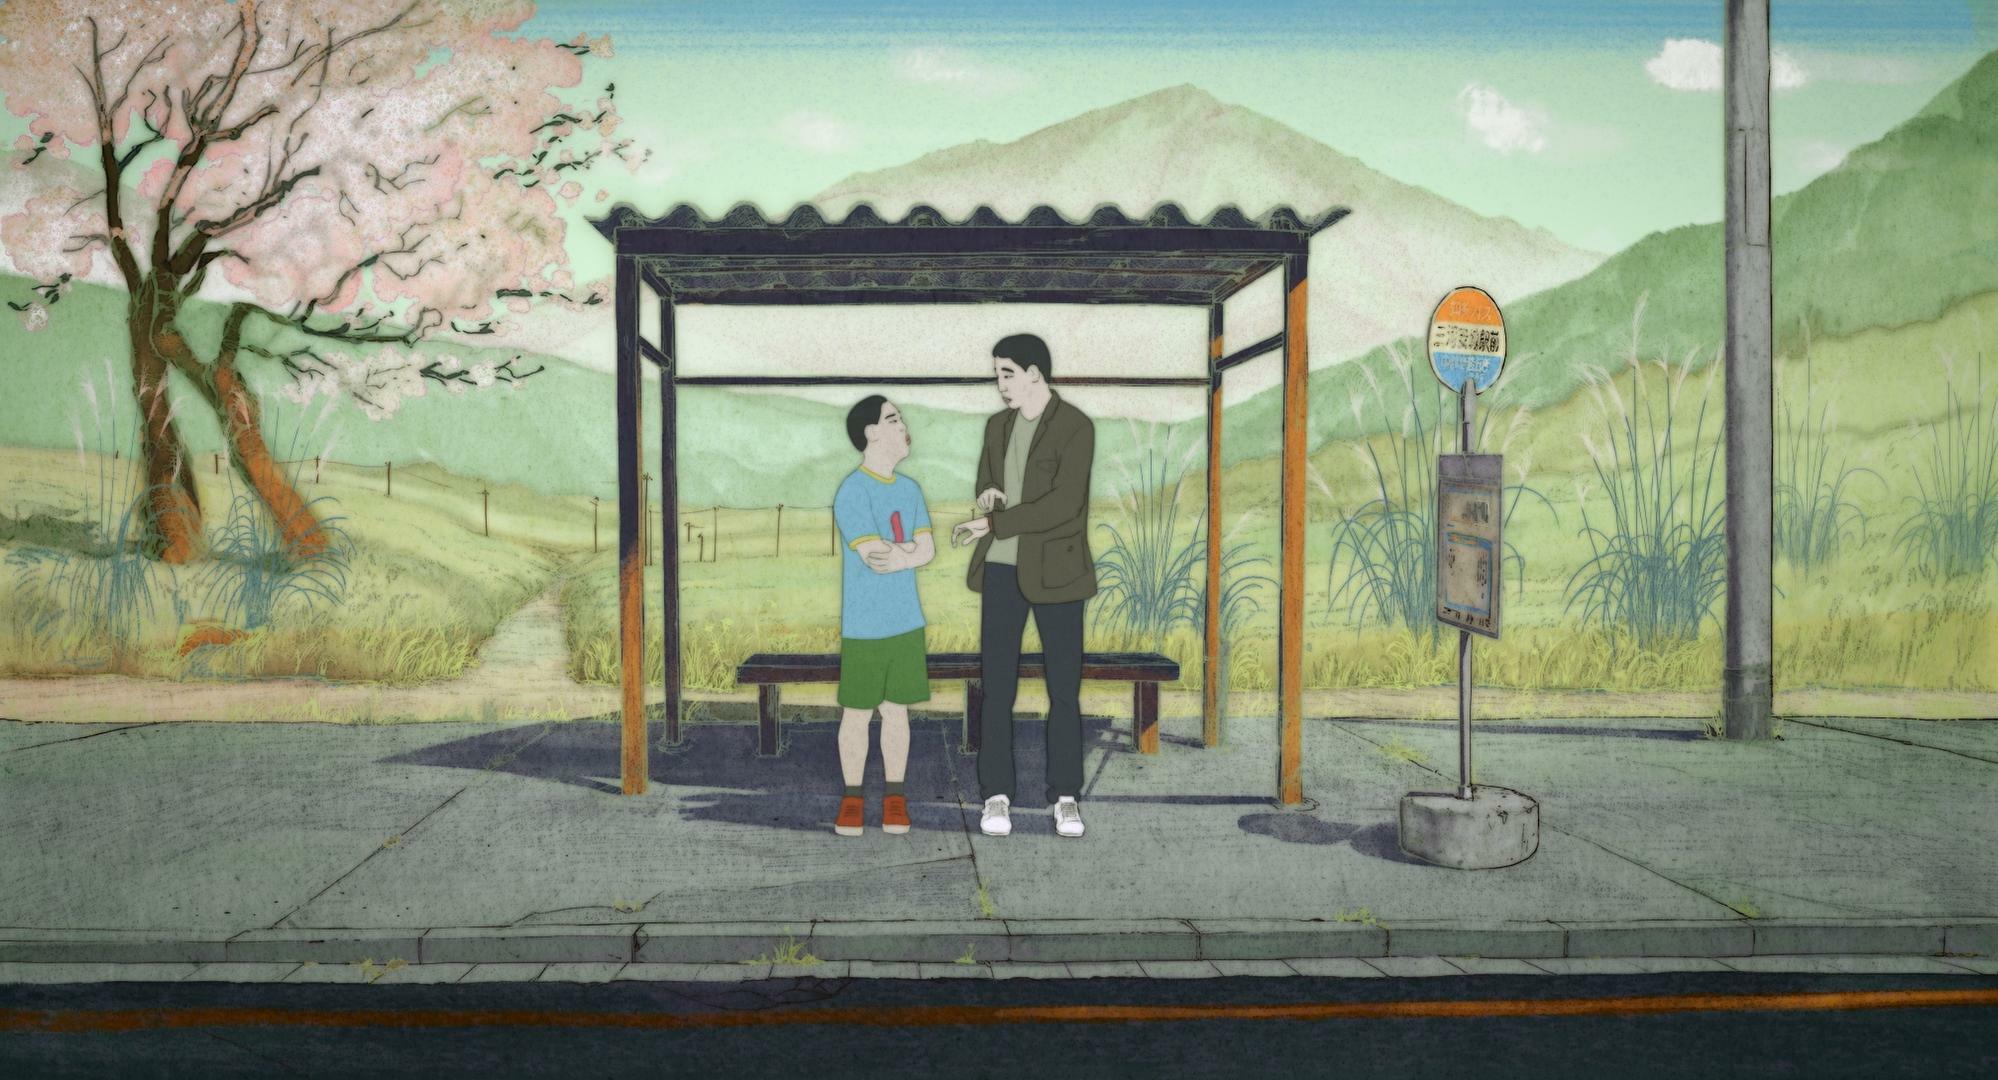 東日本大震災後の物語なので桜の季節が描かれる『めくらやなぎと眠る女』